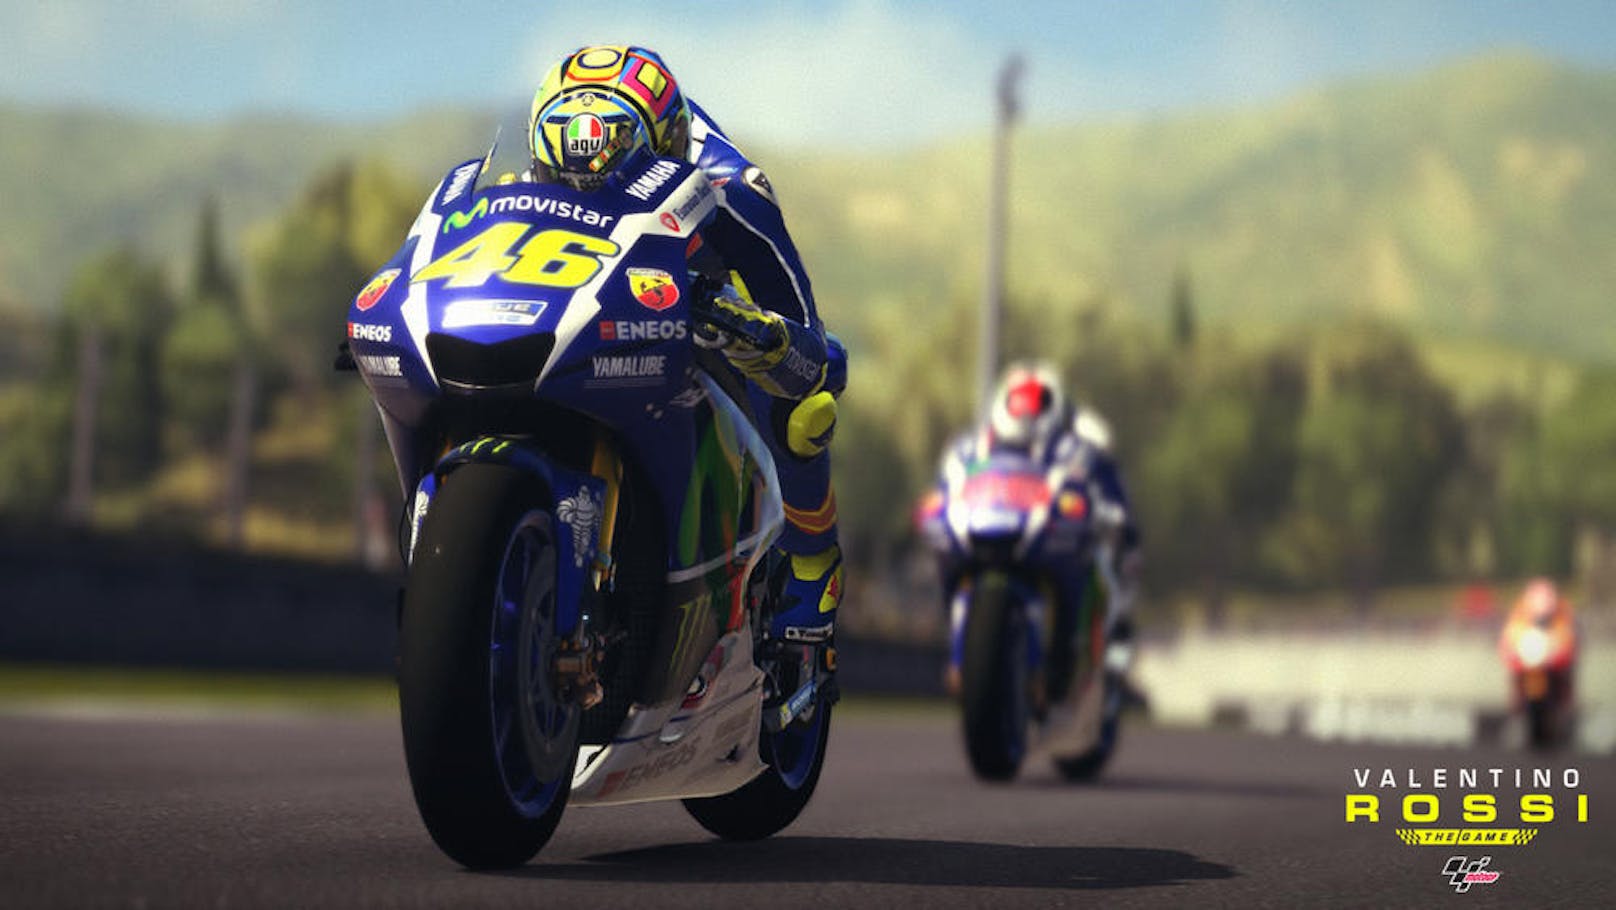 Das Gameplay zeigt sich dabei sehr unterschiedlich, was den Titel spannend macht: Rast man zuerst mit Motocross-Rädern über schmutzige Strecken, steuert man später die schwereren und komplett anders zu lenkenden MotoGP-Bikes. Eine gelungene Gratwanderung.